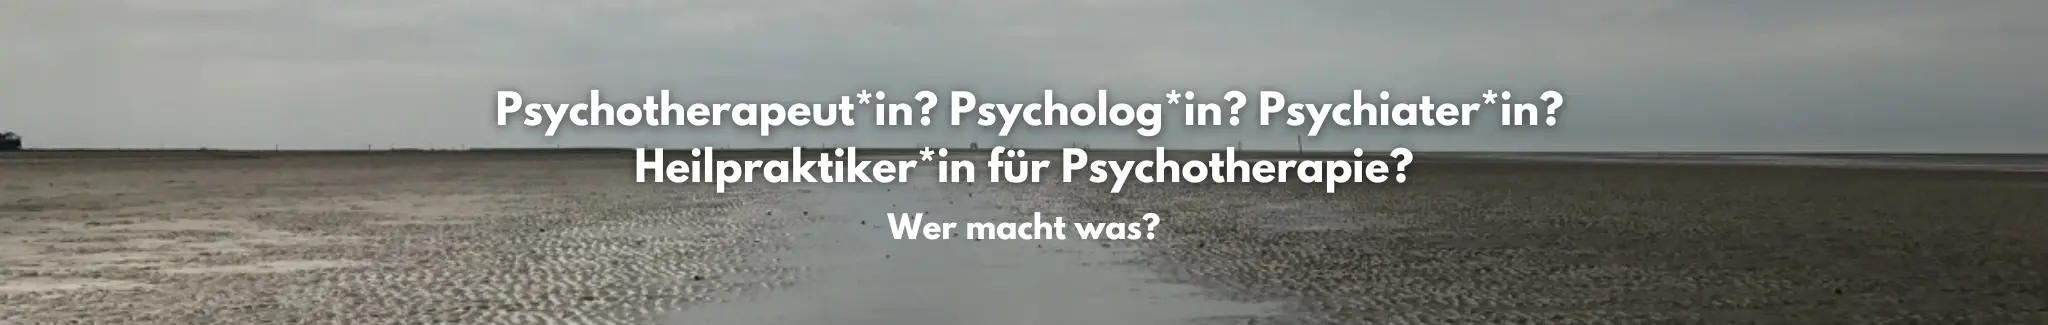 Psychologe, Psychiater, Psychotherapeut, Heilpraktiker für Psychotherapie: Wer macht was?